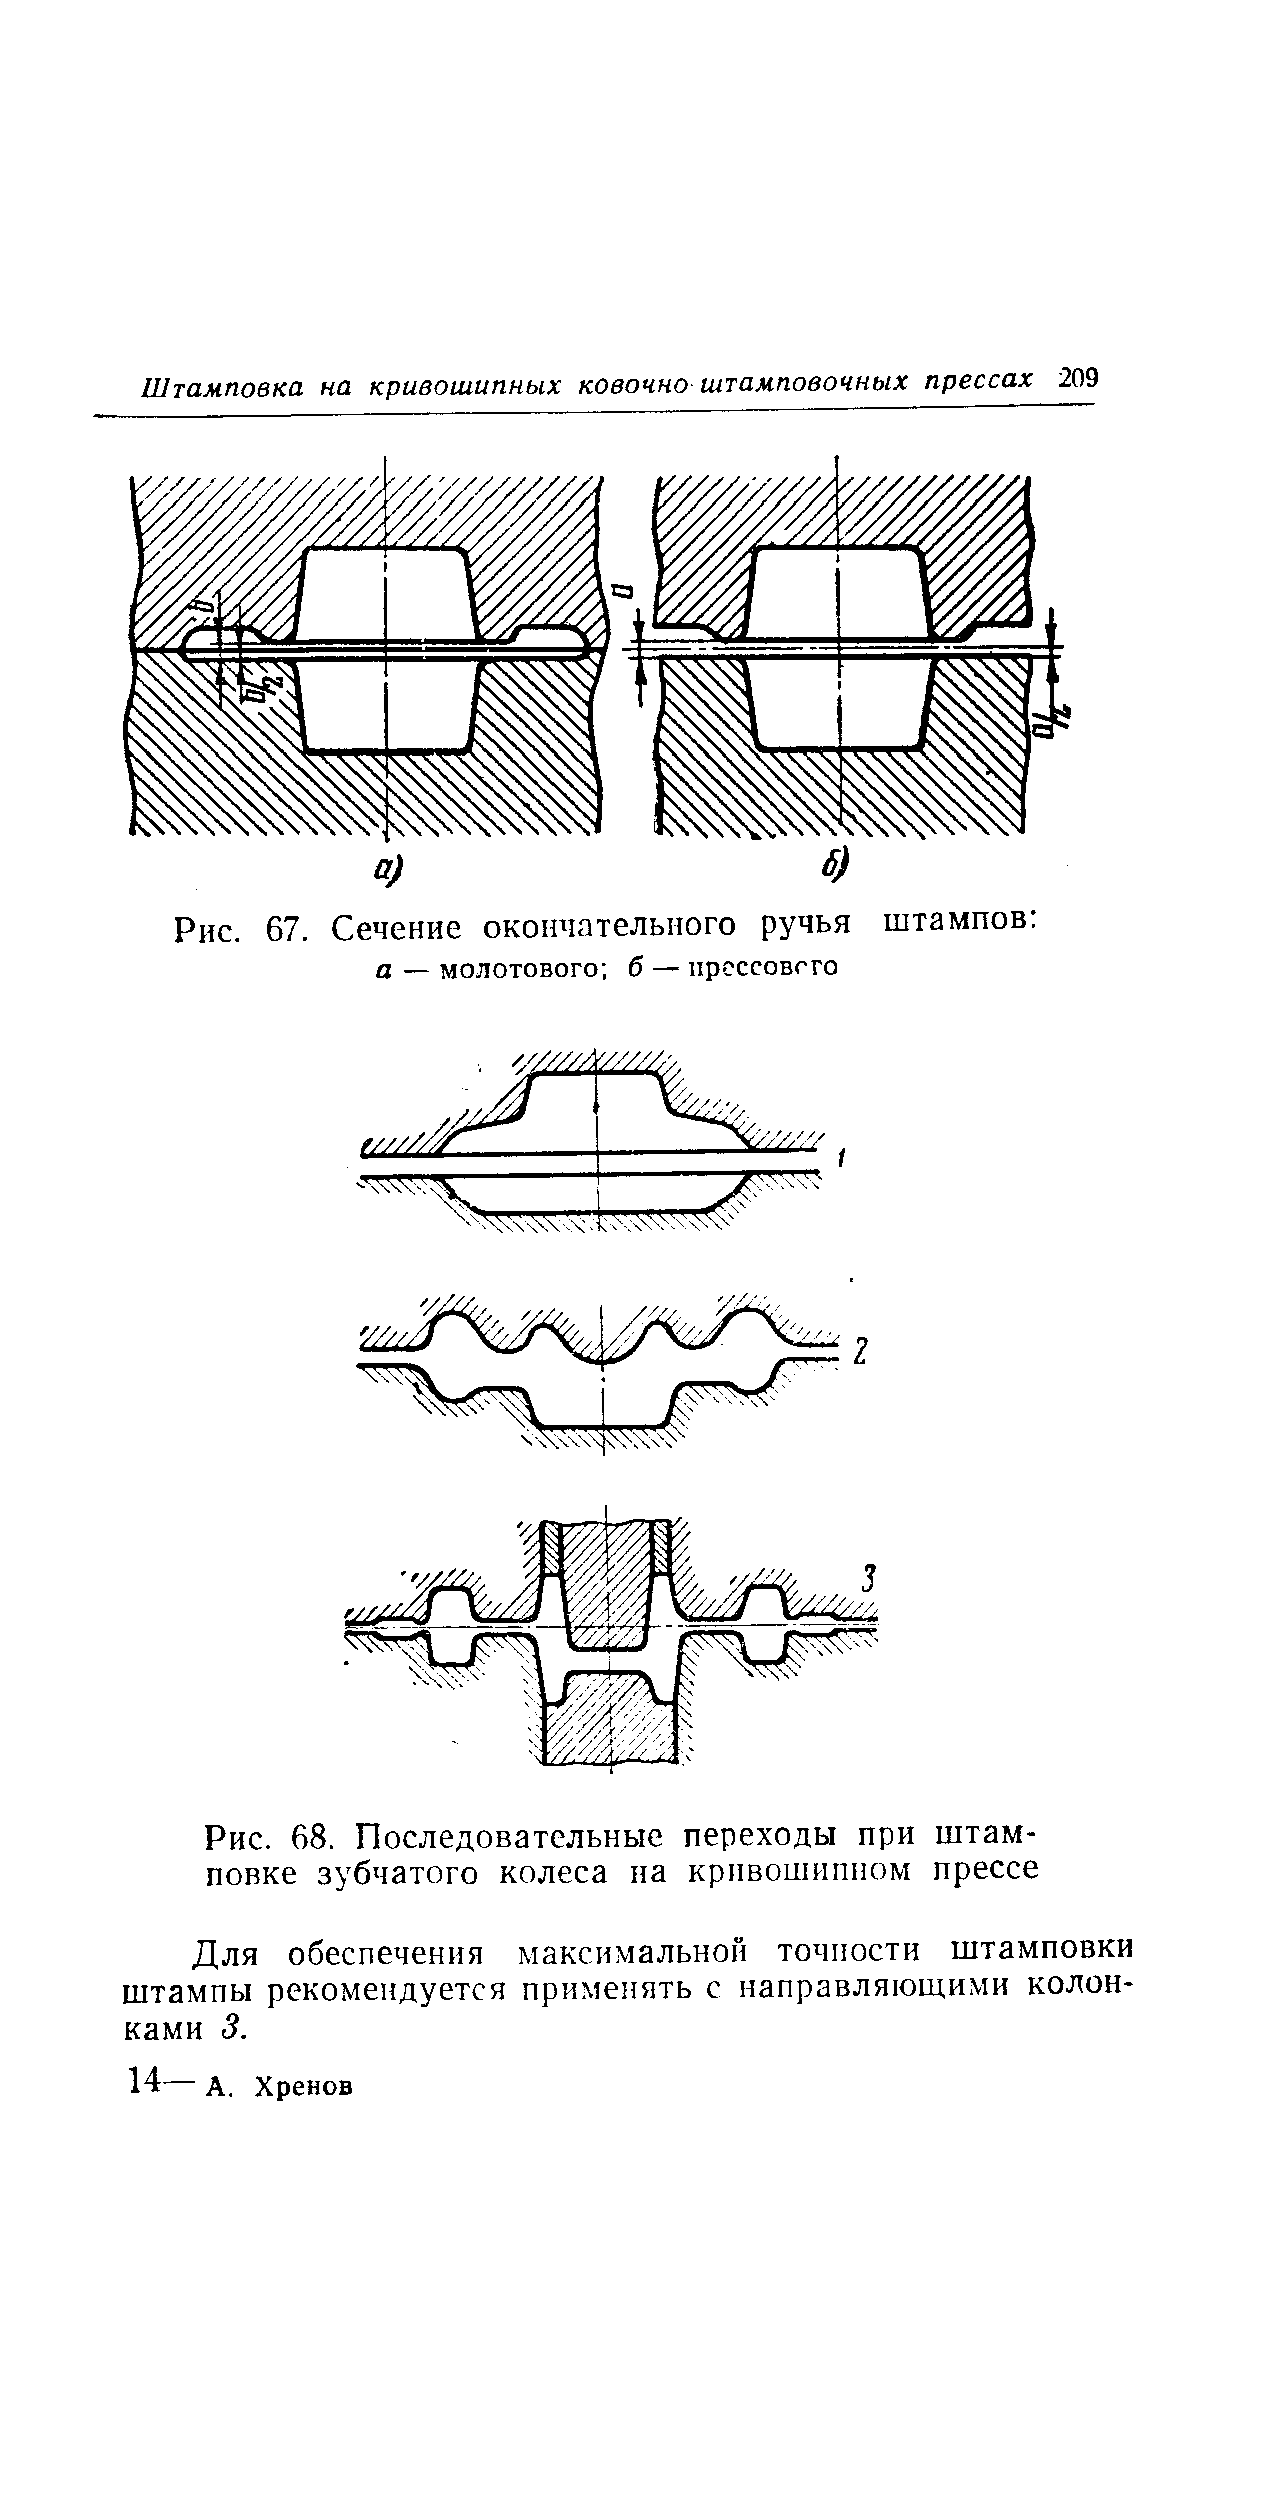 Рис. 68, Последовательные переходы при штамповке зубчатого колеса на кривошипном прессе
